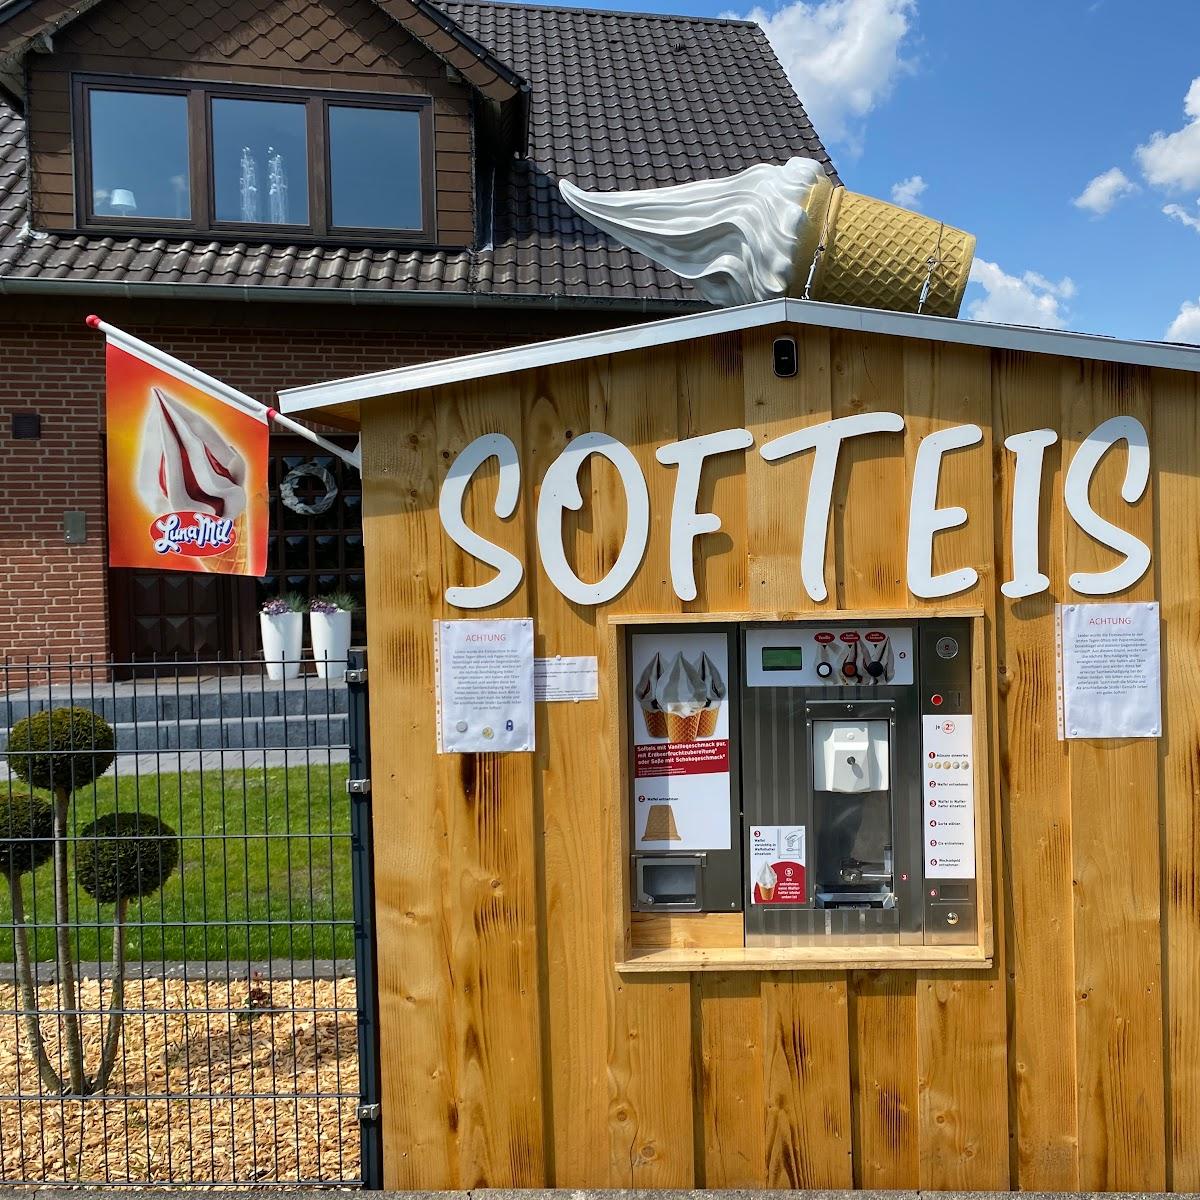 Restaurant "Eisdiele" in Augustdorf